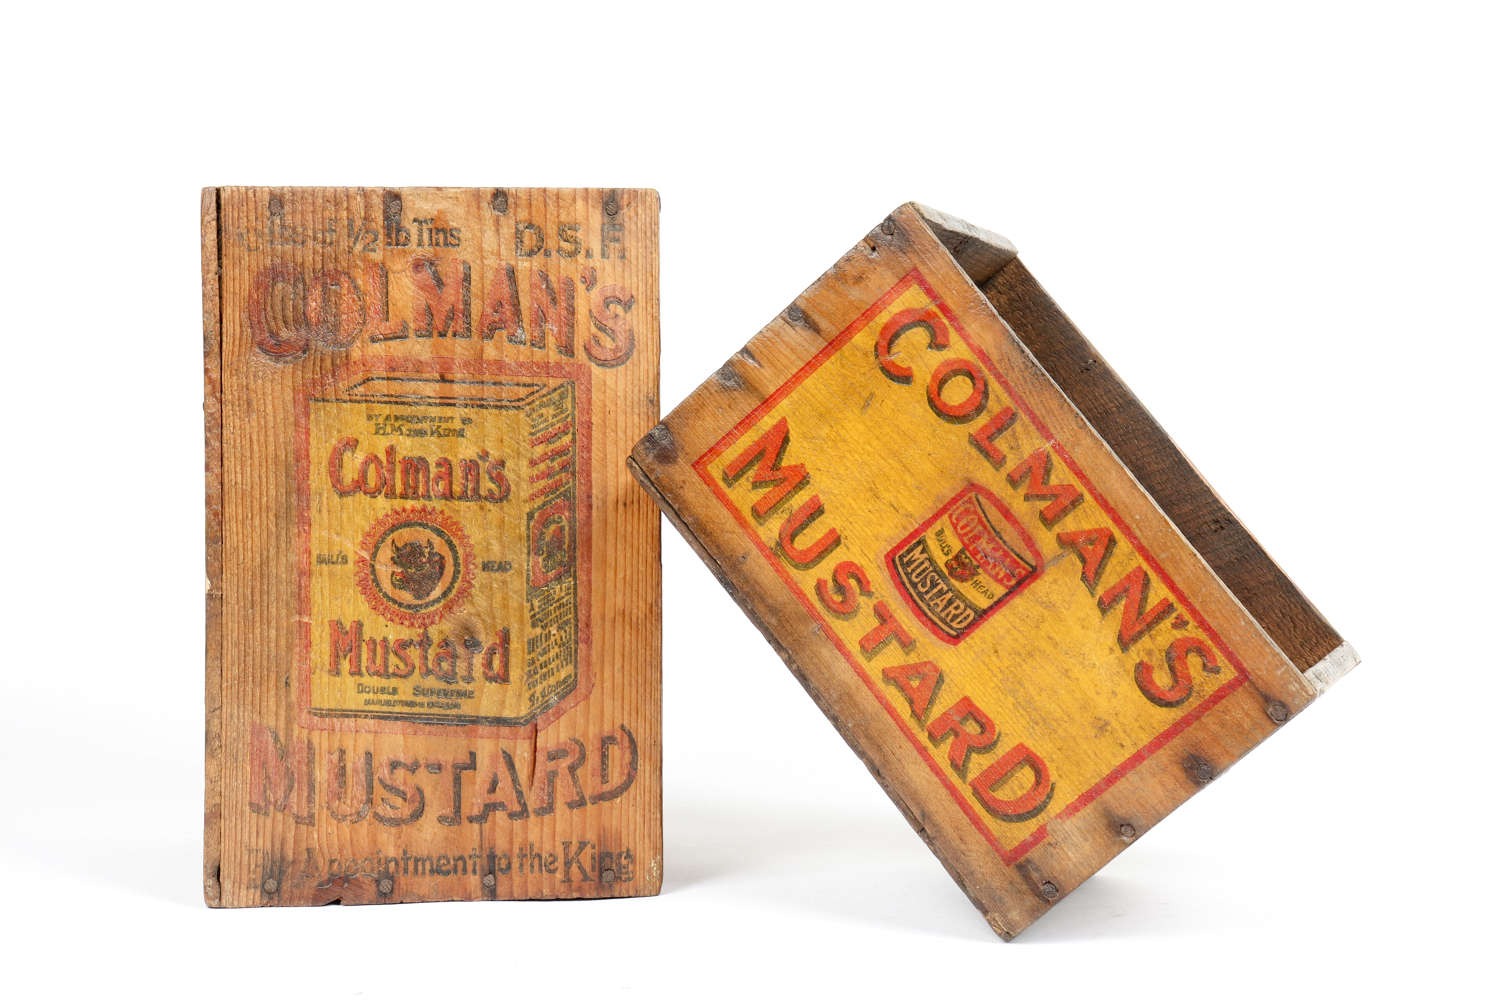 Original vintage Colman's Mustard shop delivery and display box